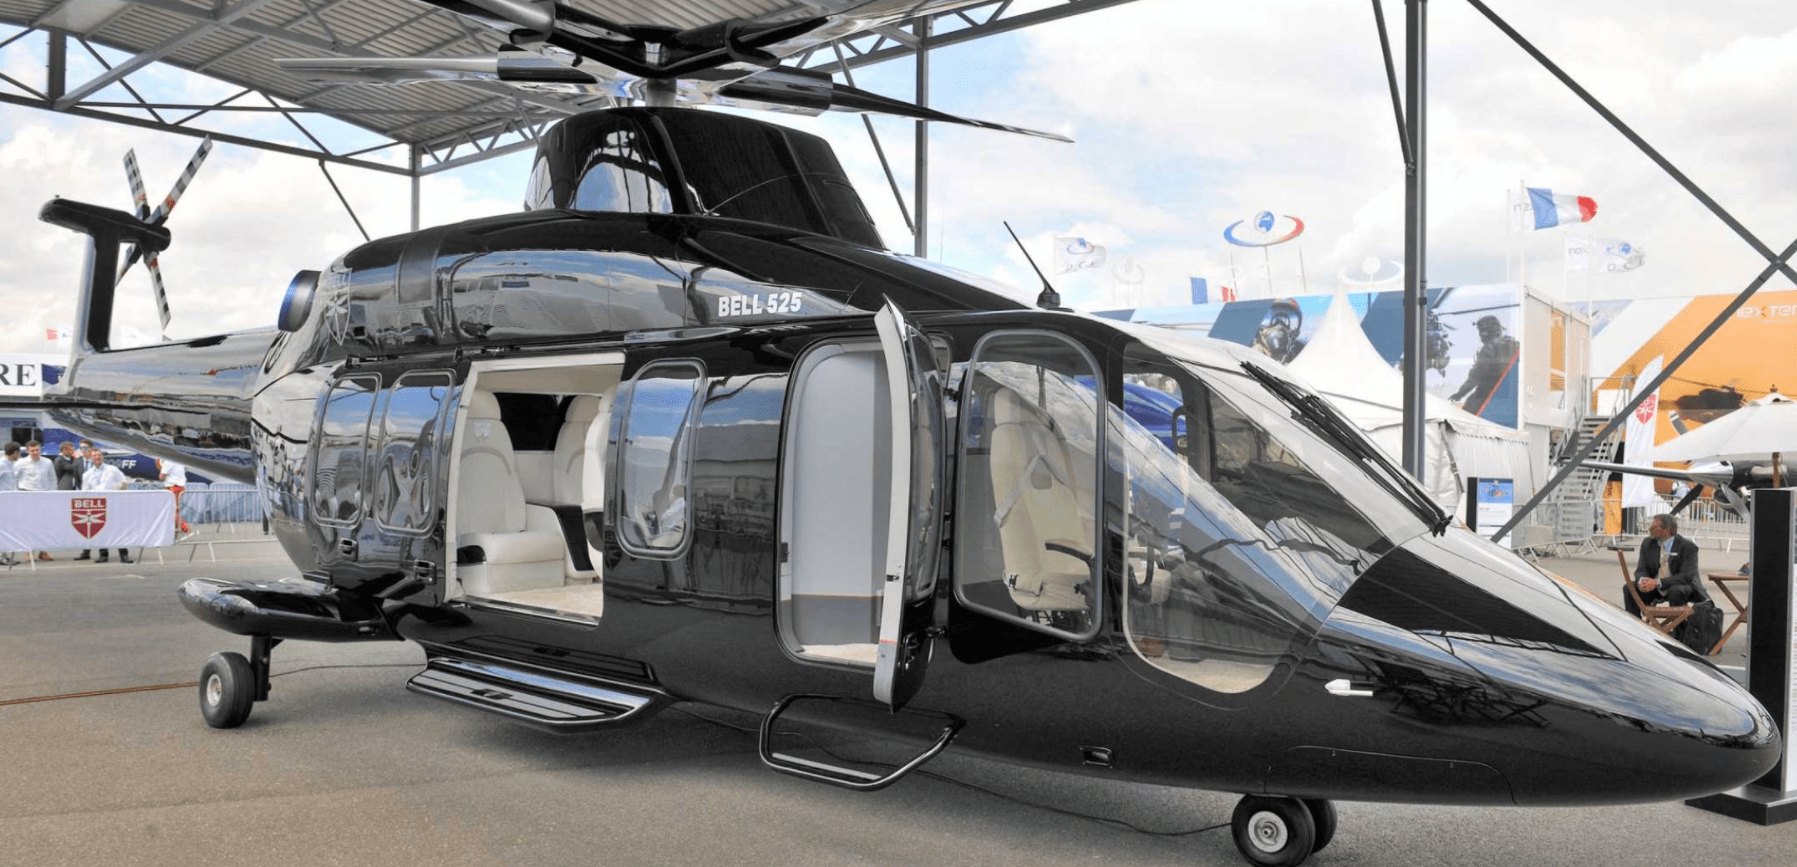 贝尔525直升机(绰号"relentless",可译为:永不停下)号称是世界上第一